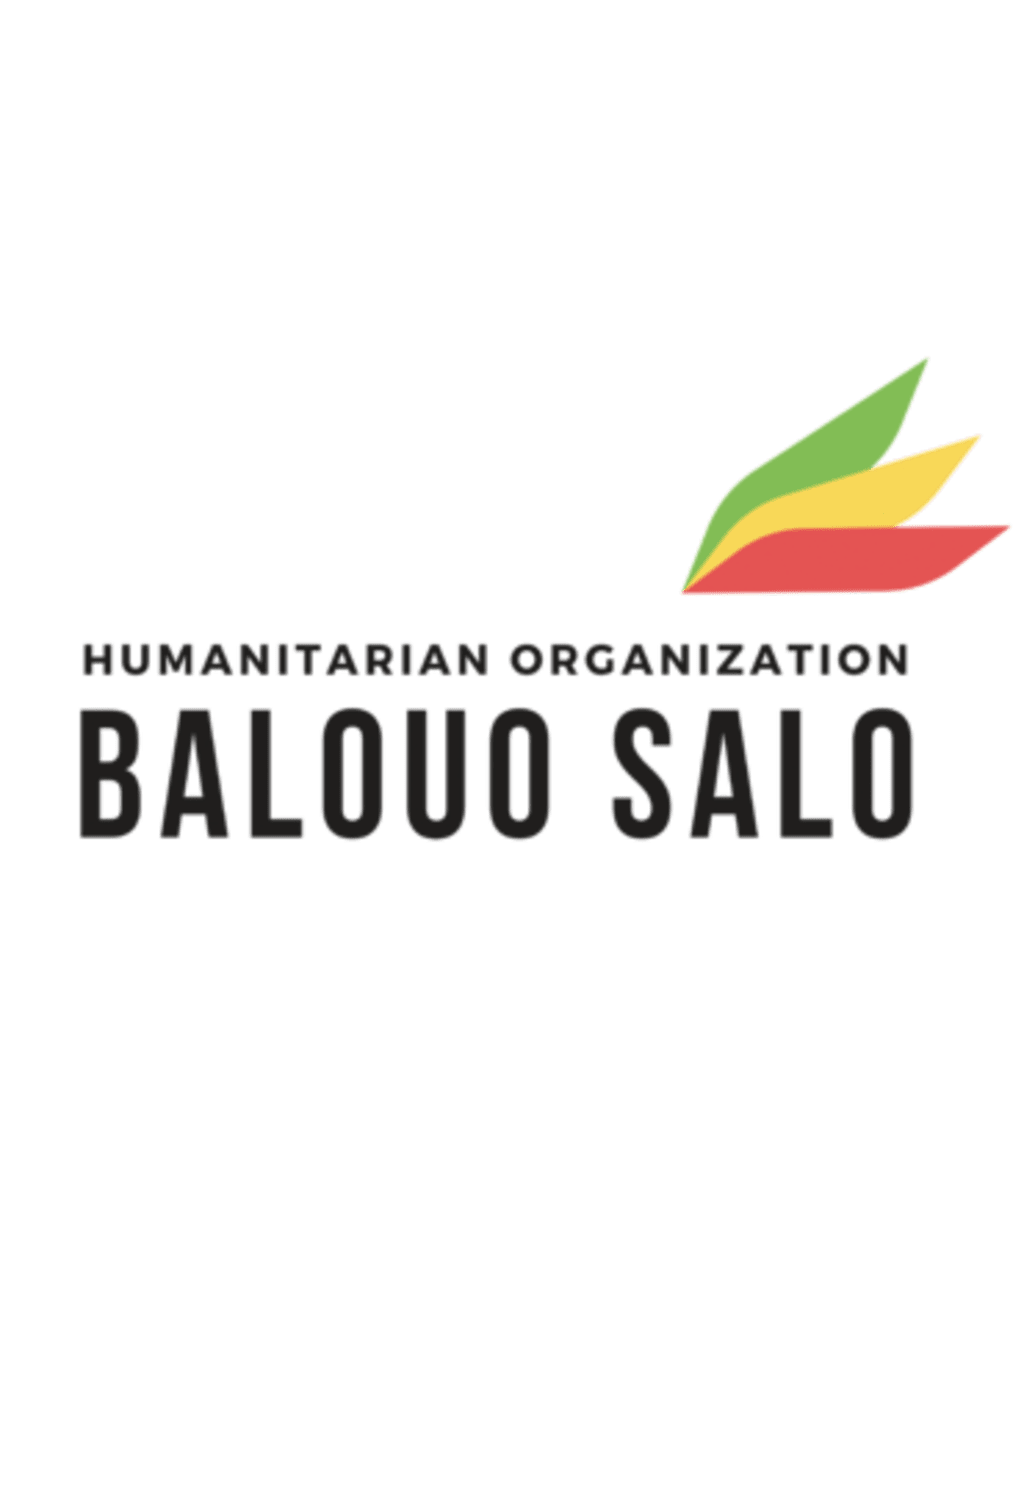 Balouo Salo t-shirt